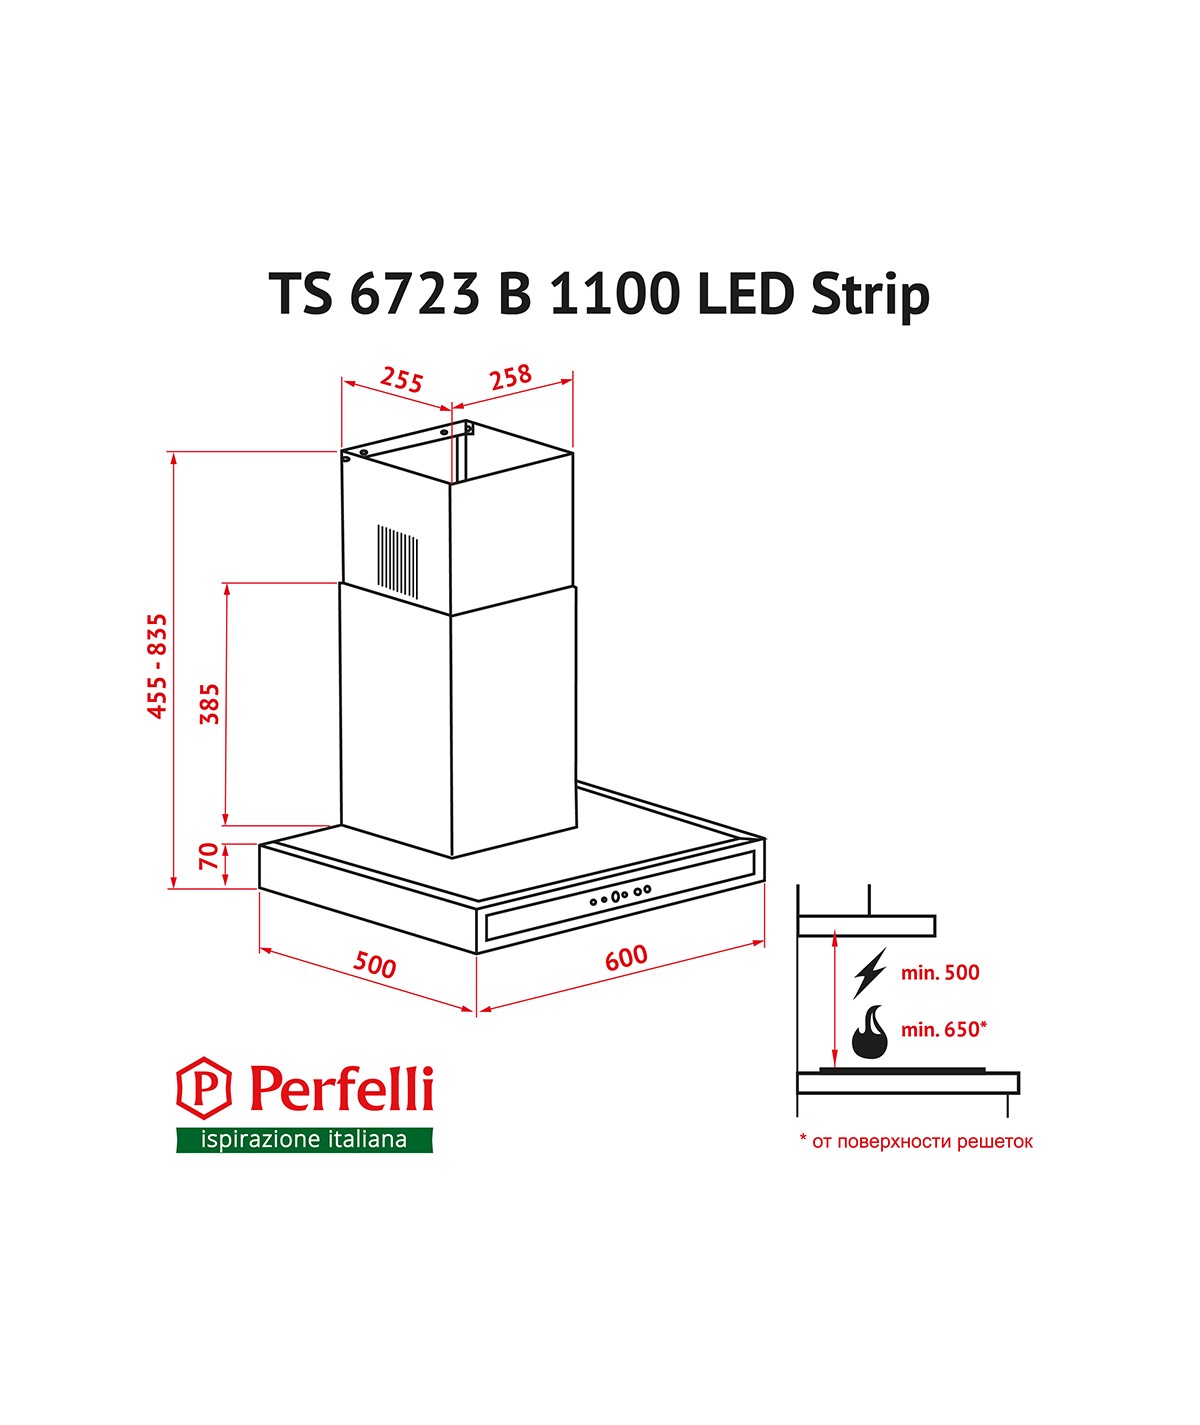 Perfelli TS 6723 B 1100 BL LED Strip Габаритные размеры